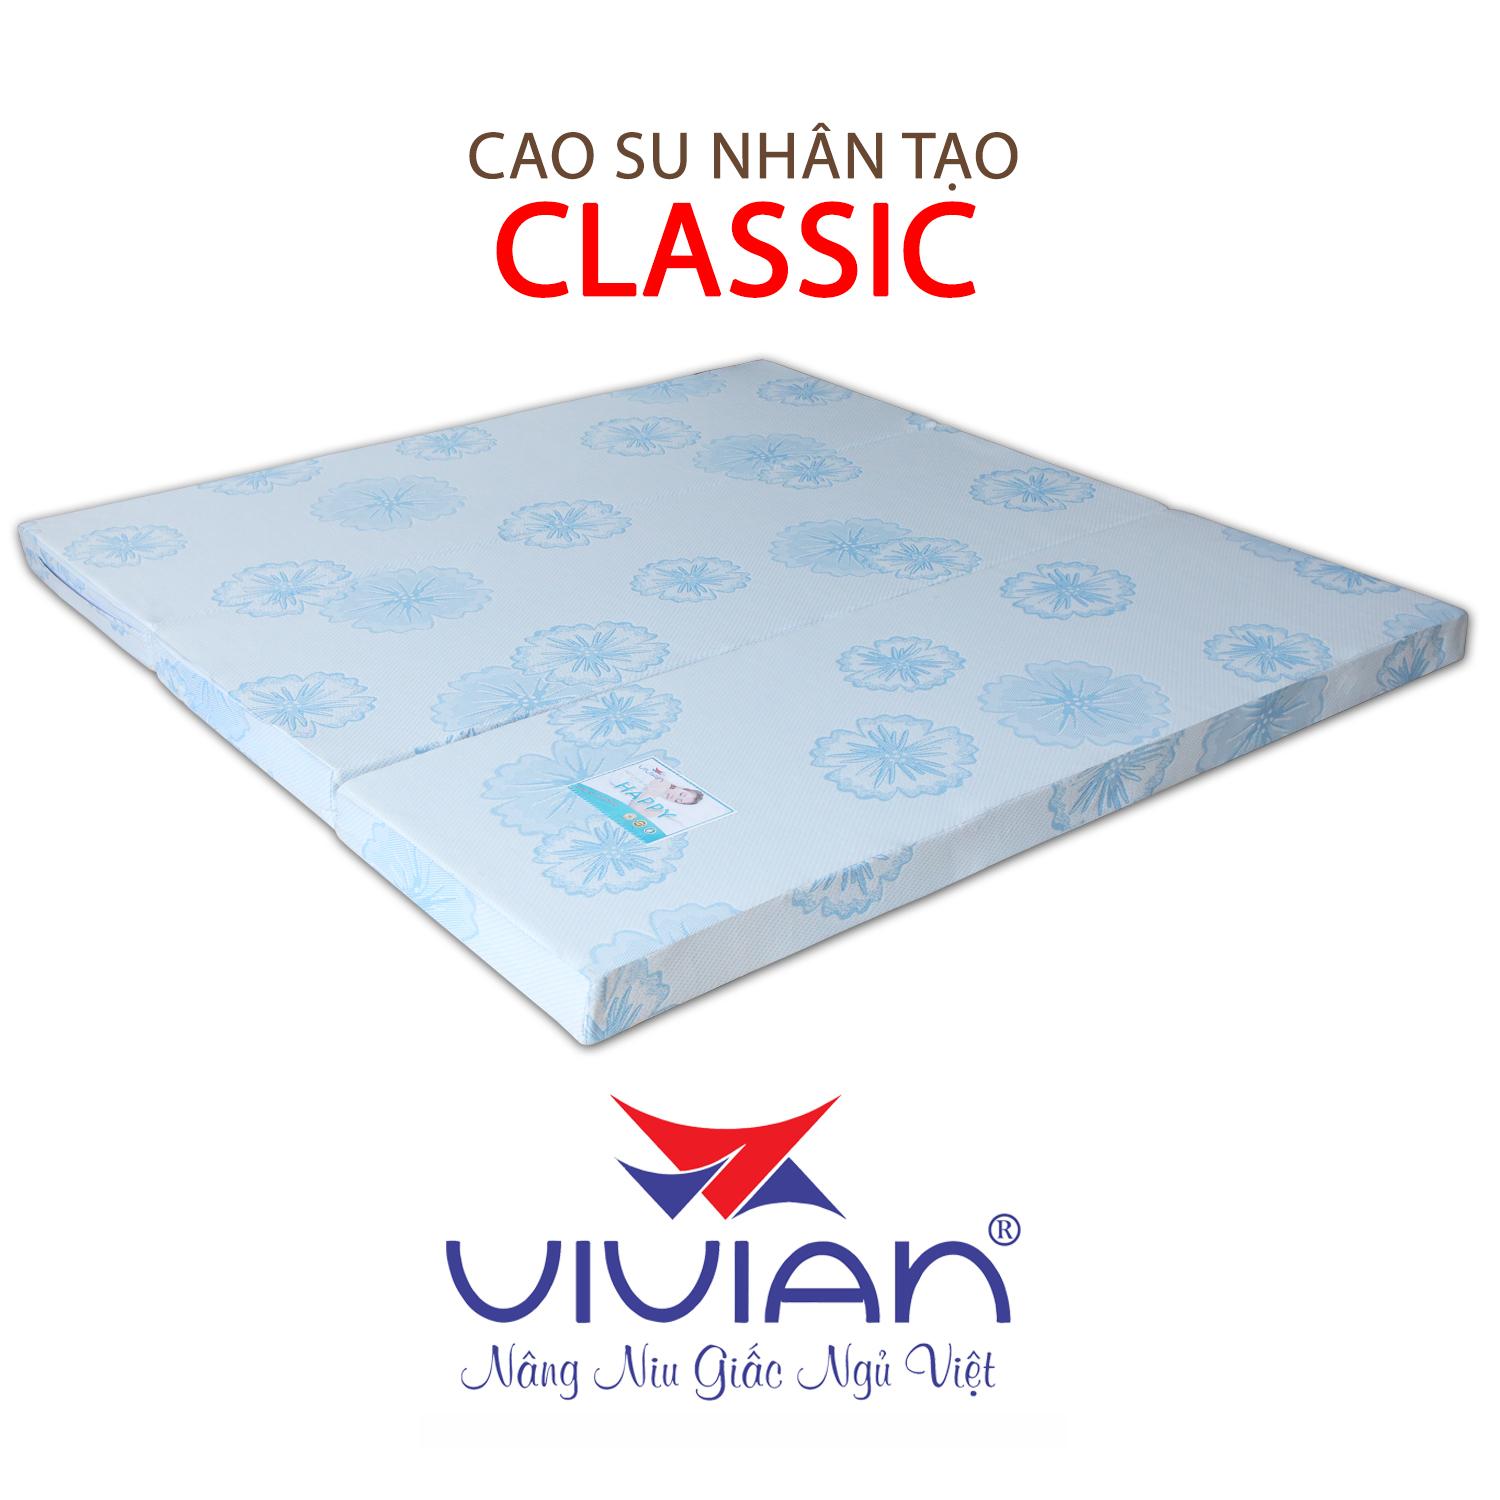 NỆM CAO SU NHÂN TẠO CLASSIC GẤP 3 VIVIAN 140X200X20